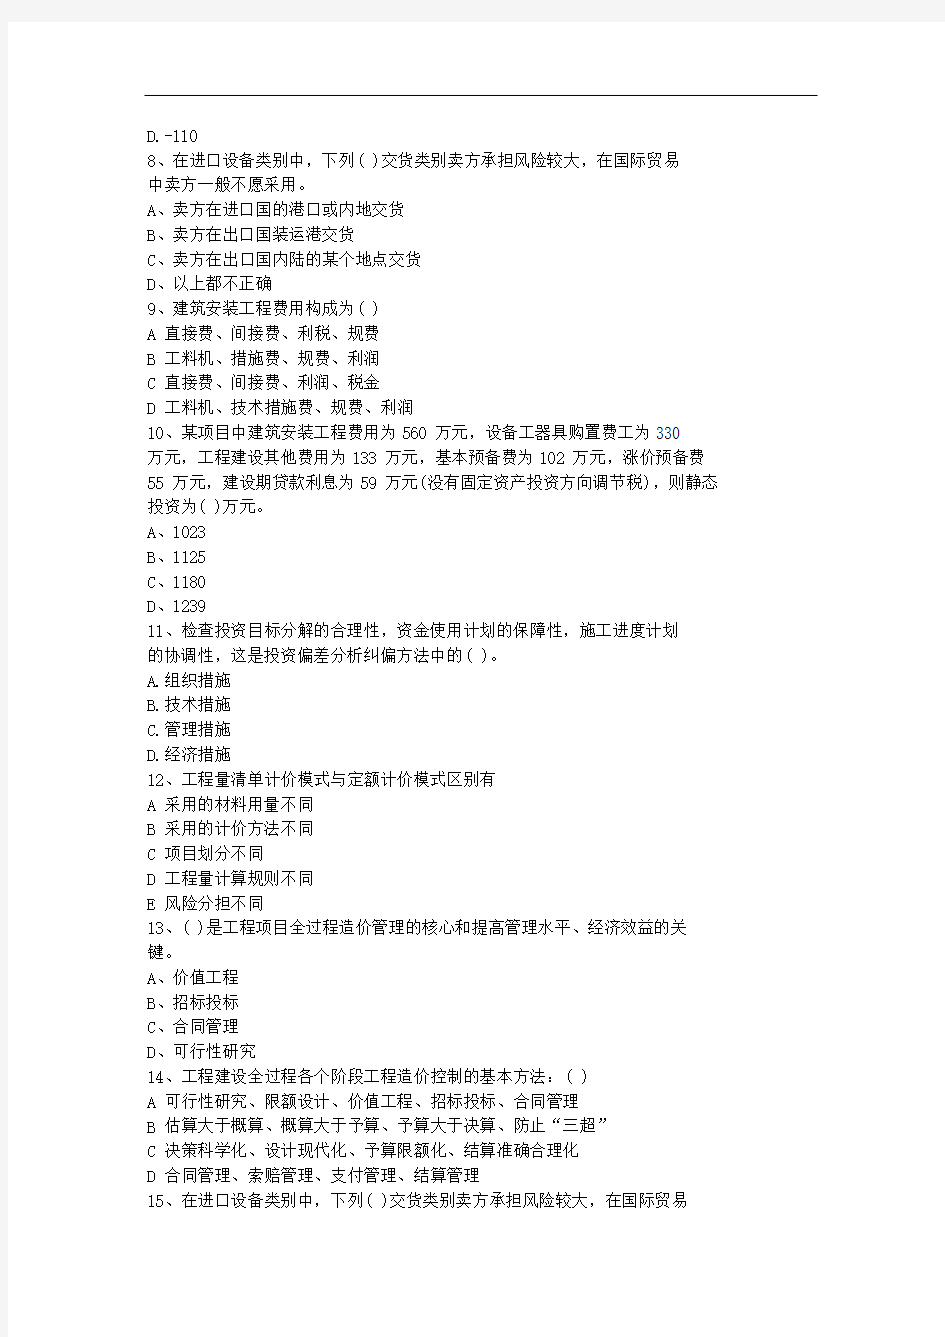 2010江苏省造价员考试试题及答案全(打印版)每日一练(10月5日)